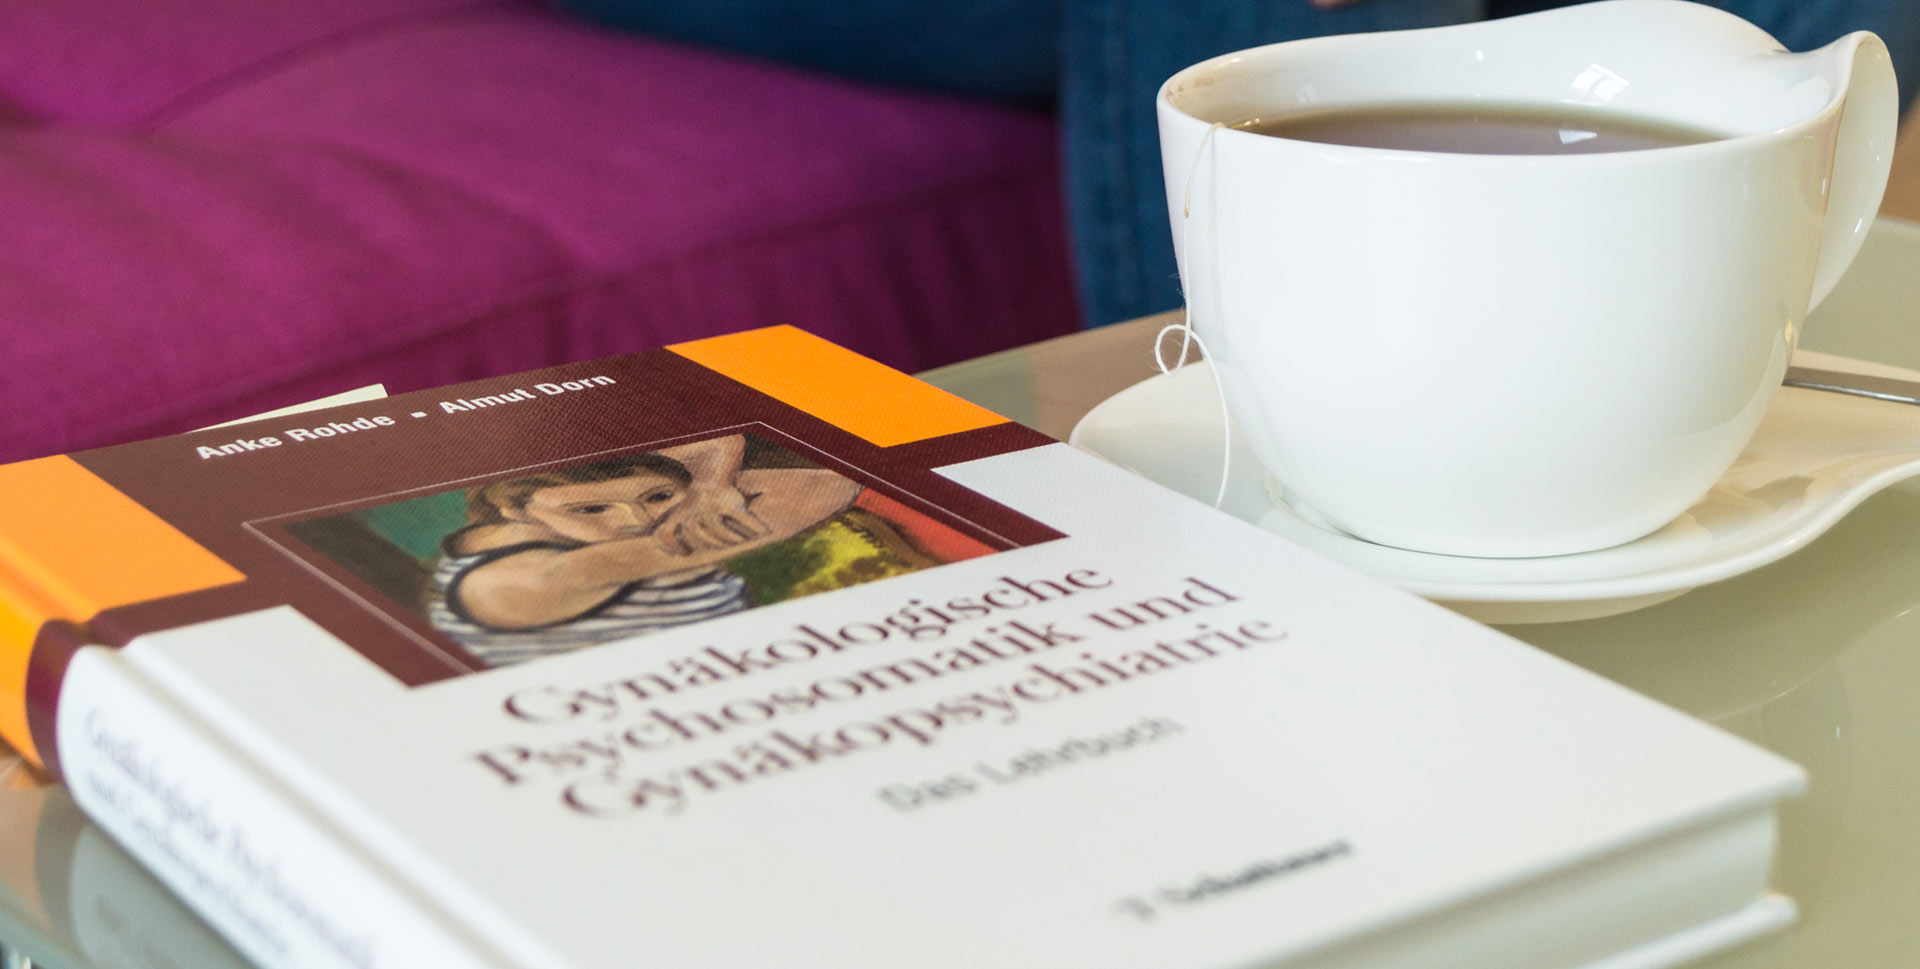 Psychologie-Buch und Teetasse